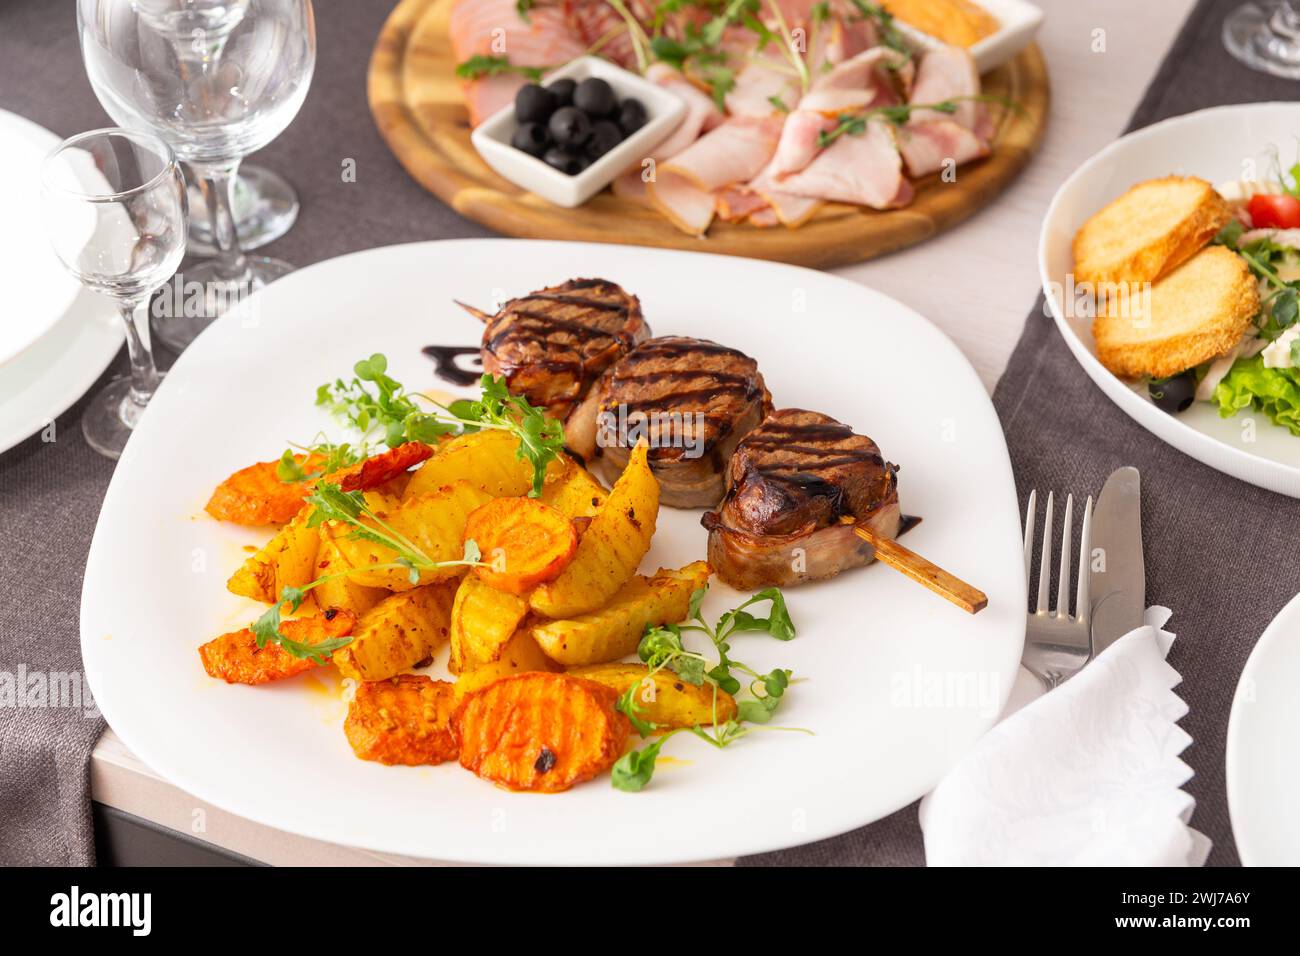 Gegrilltes Fleisch auf einem Spieß mit einer Beilage aus Gemüse und Pommes Frites auf einem weißen Teller. Serviert Gerichte für eine Person in einem Café oder Restaurant. Stockfoto